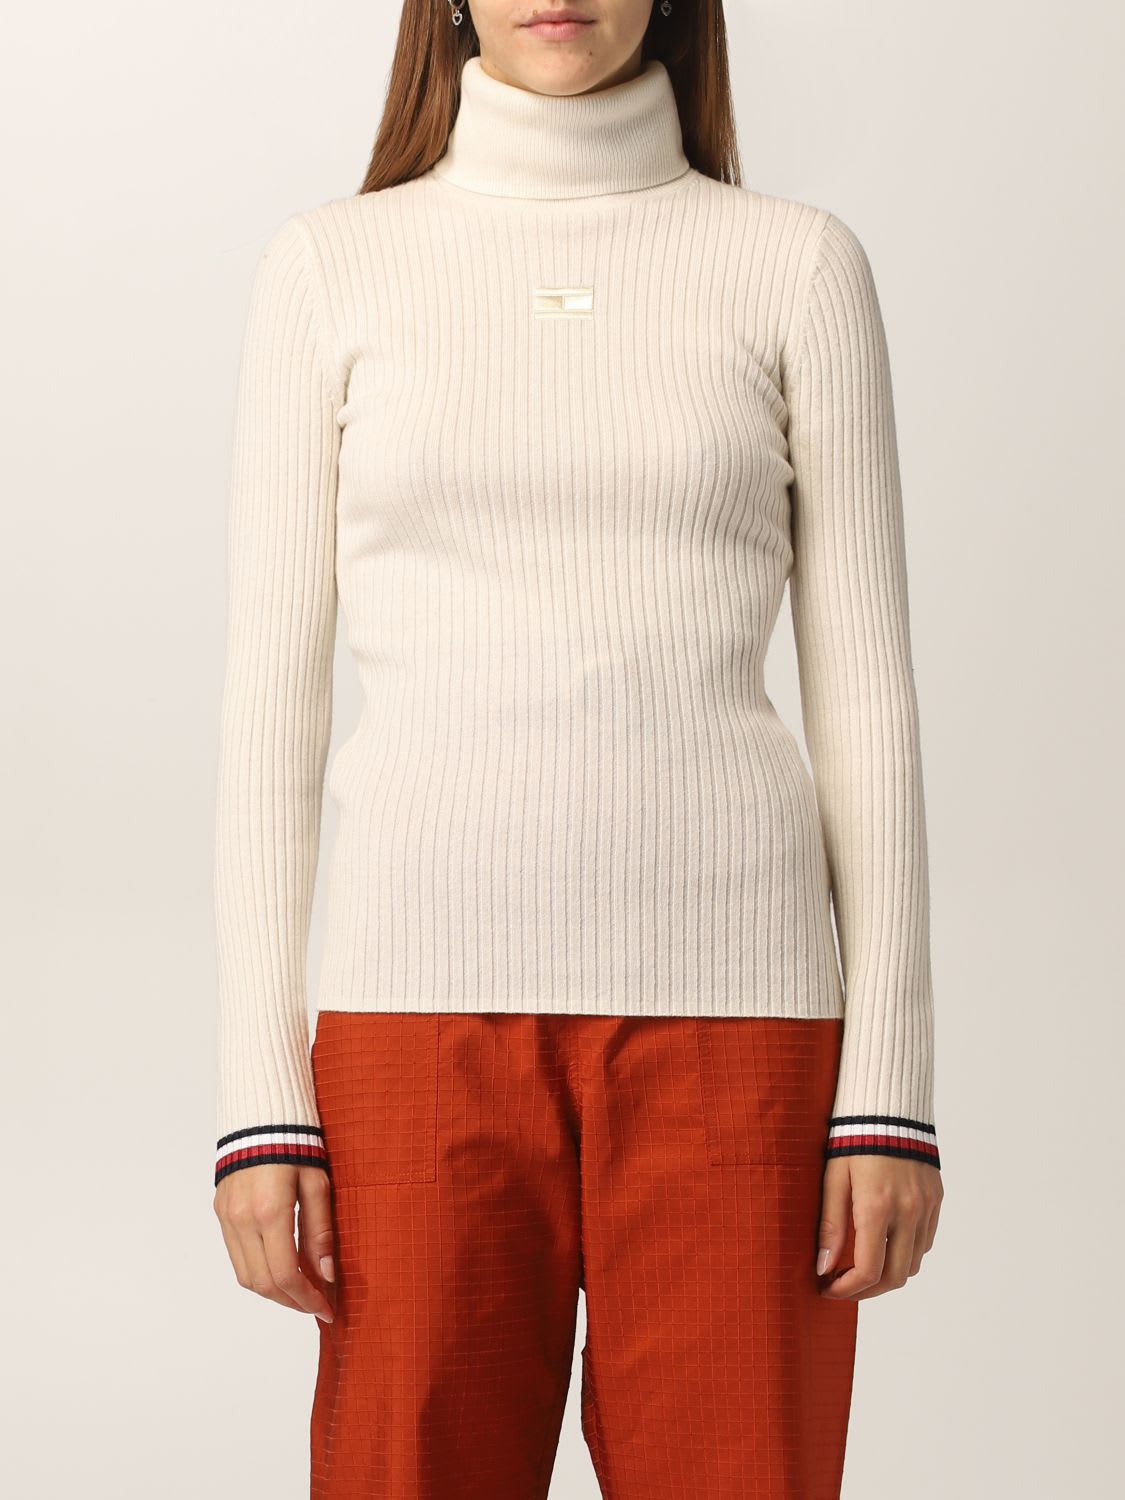 Hilfiger Denim Hilfiger Collection Sweater Sweater Women Hilfiger Collection